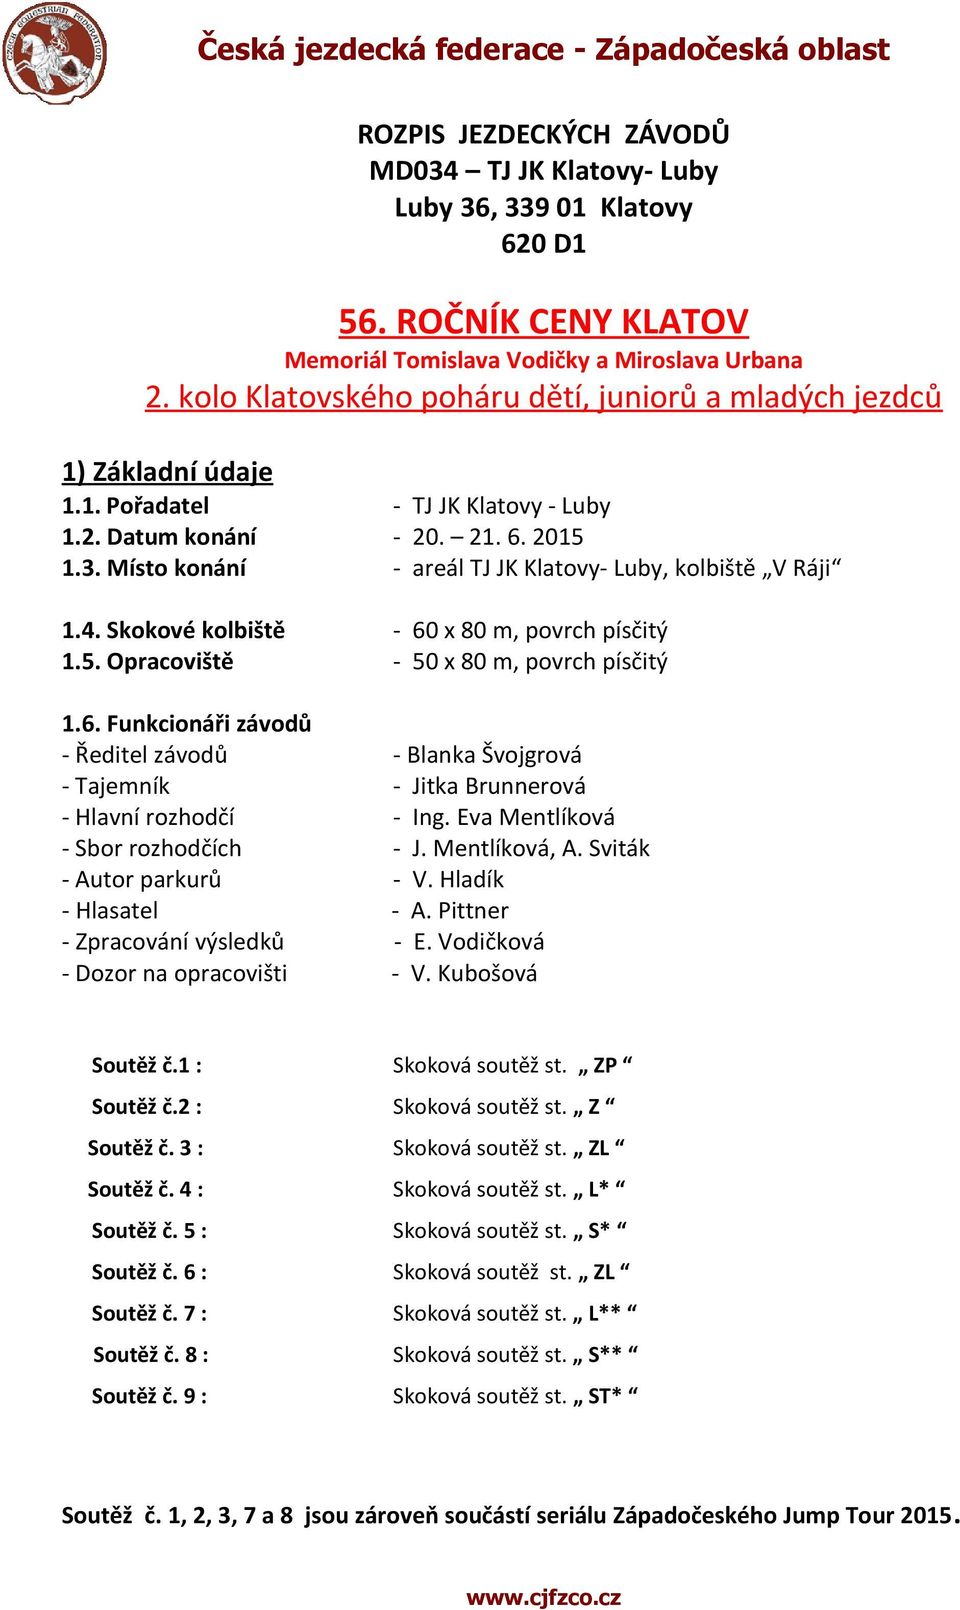 Místo konání - areál TJ JK Klatovy- Luby, kolbiště V Ráji 1.4. Skokové kolbiště - 60 x 80 m, povrch písčitý 1.5. Opracoviště - 50 x 80 m, povrch písčitý 1.6. Funkcionáři závodů - Ředitel závodů - Blanka Švojgrová - Tajemník - Jitka Brunnerová - Hlavní rozhodčí - Ing.